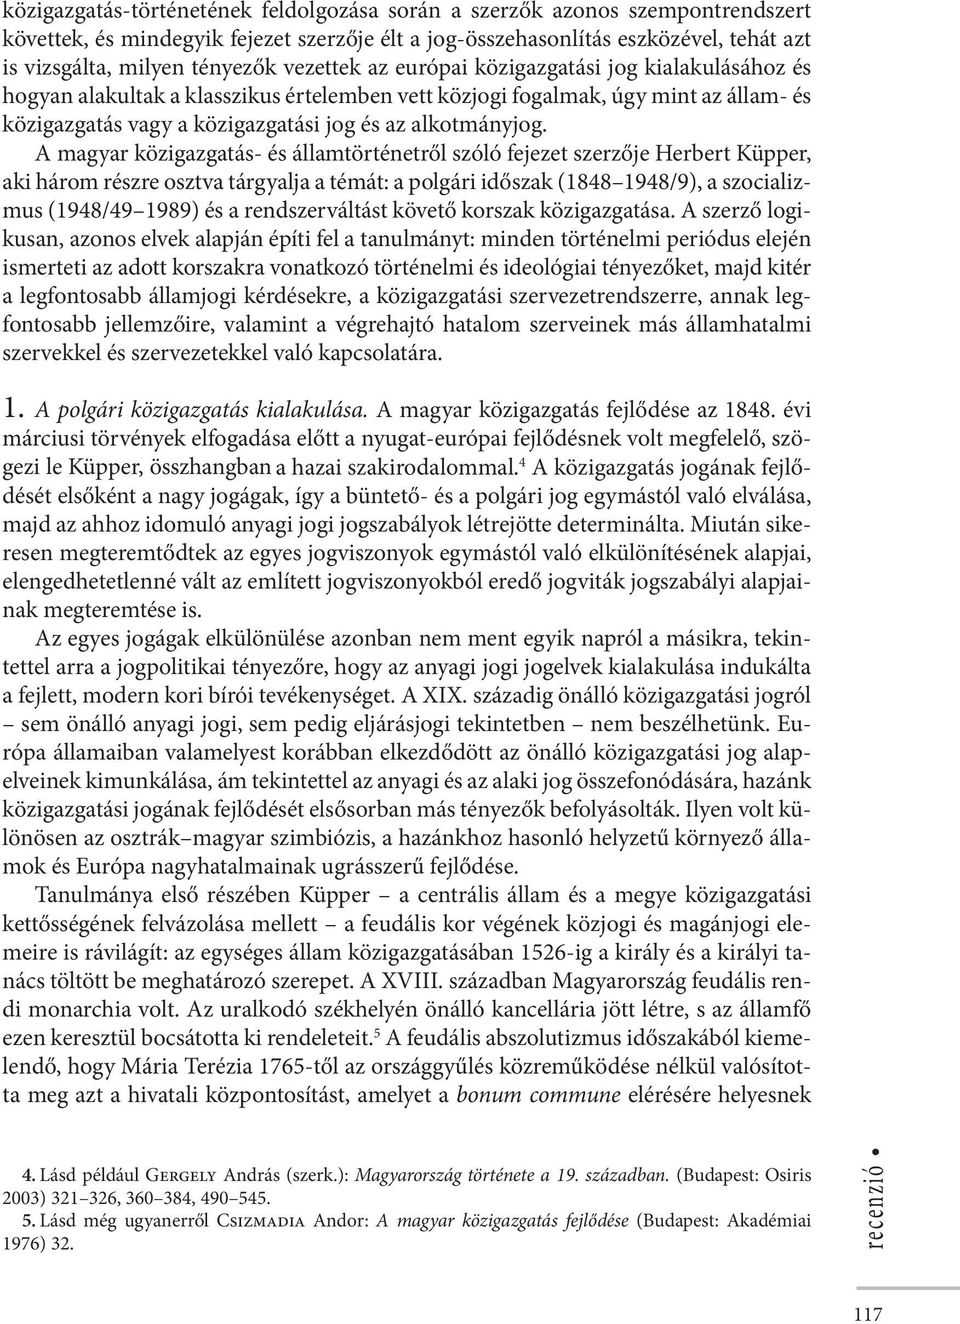 A magyar közigazgatás- és államtörténetről szóló fejezet szerzője Herbert Küpper, aki három részre osztva tárgyalja a témát: a polgári időszak (1848 1948/9), a szocializmus (1948/49 1989) és a